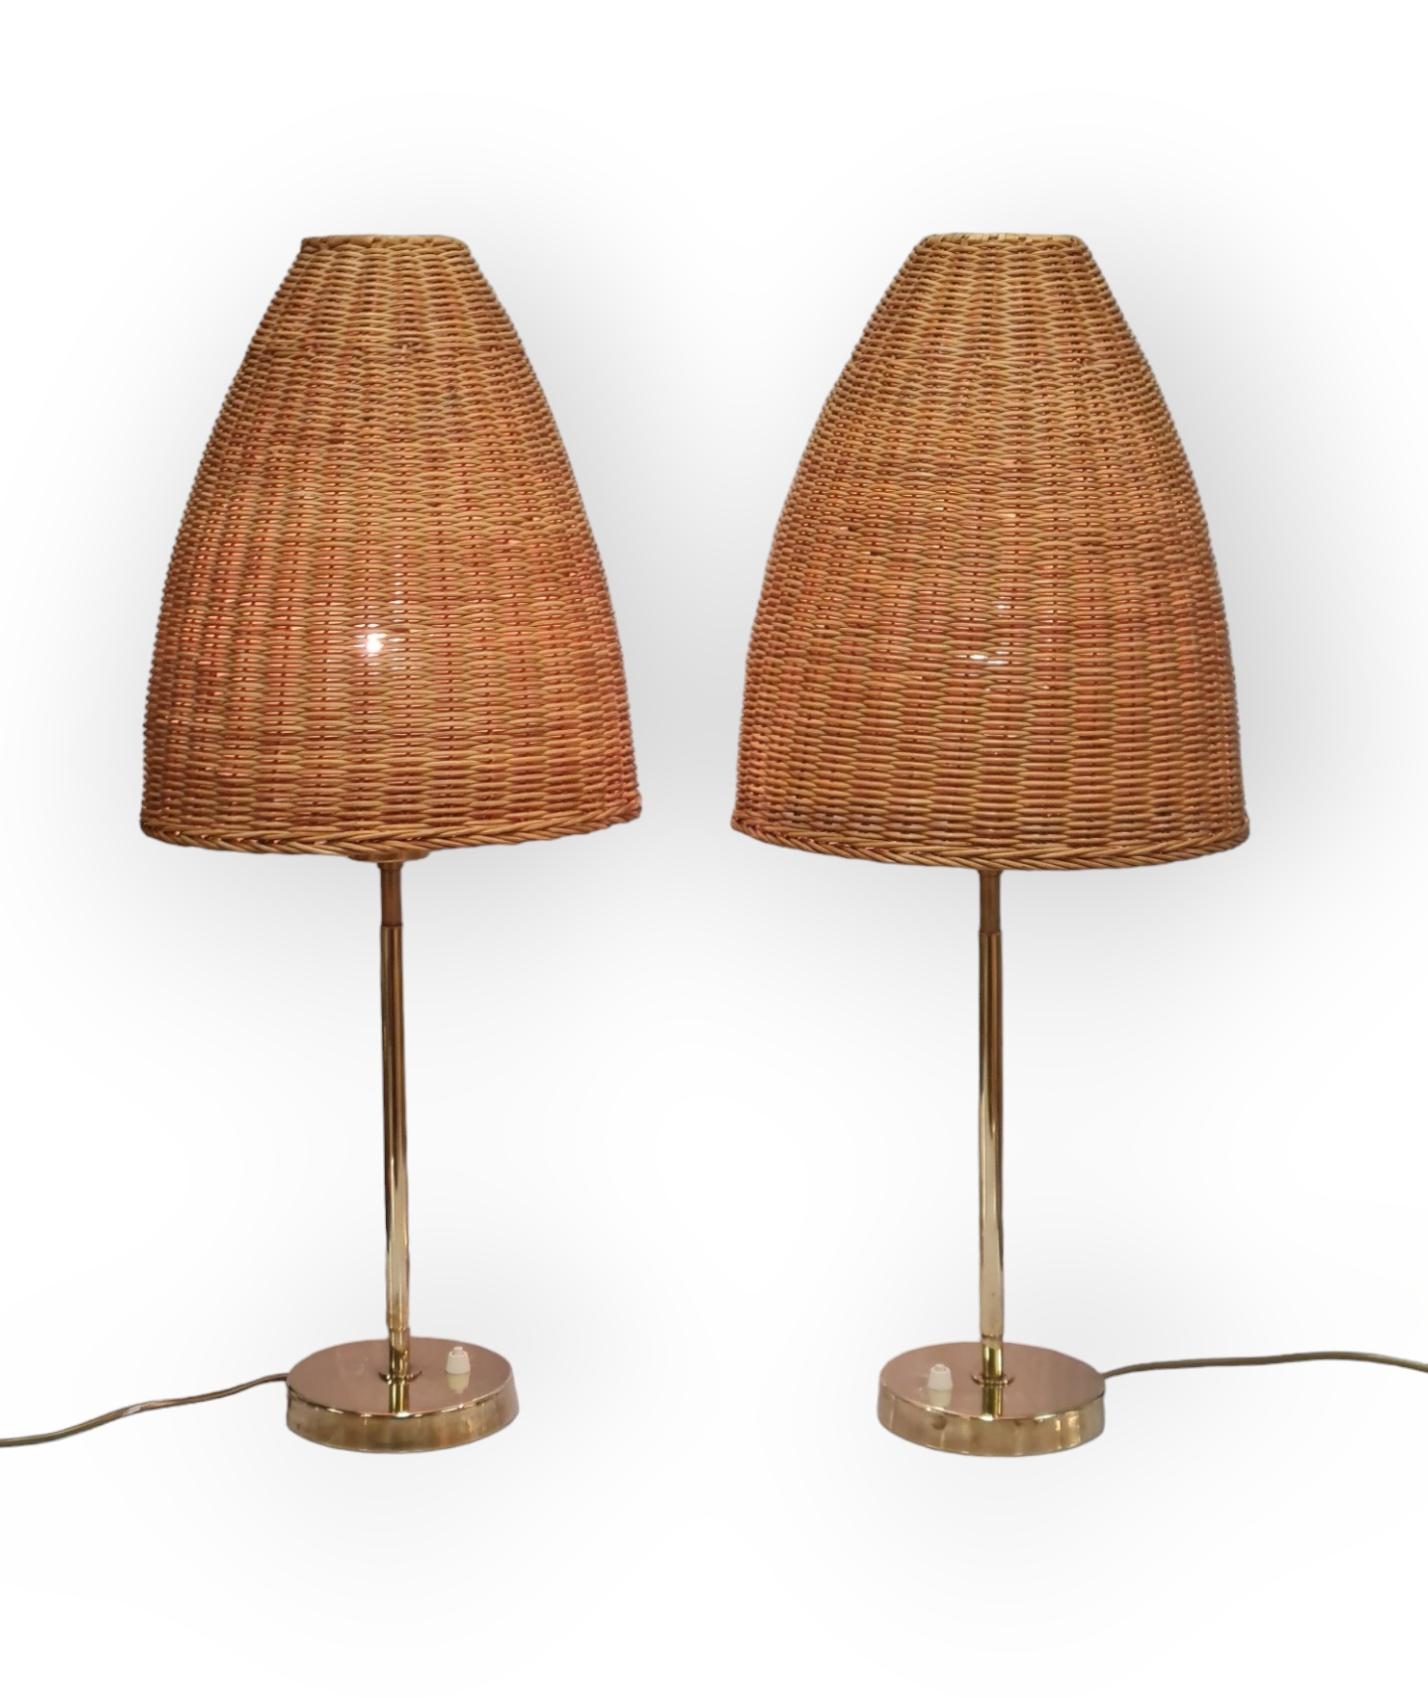 Cette paire de lampes n'est pas facile à trouver, car elle est extrêmement rare. 

Maija Heikinheimo (1908-1963) était une architecte d'intérieur qui a commencé sa carrière chez Asko en 1932-1935. Plus tard, elle a rejoint l'équipe d'Artek et a été